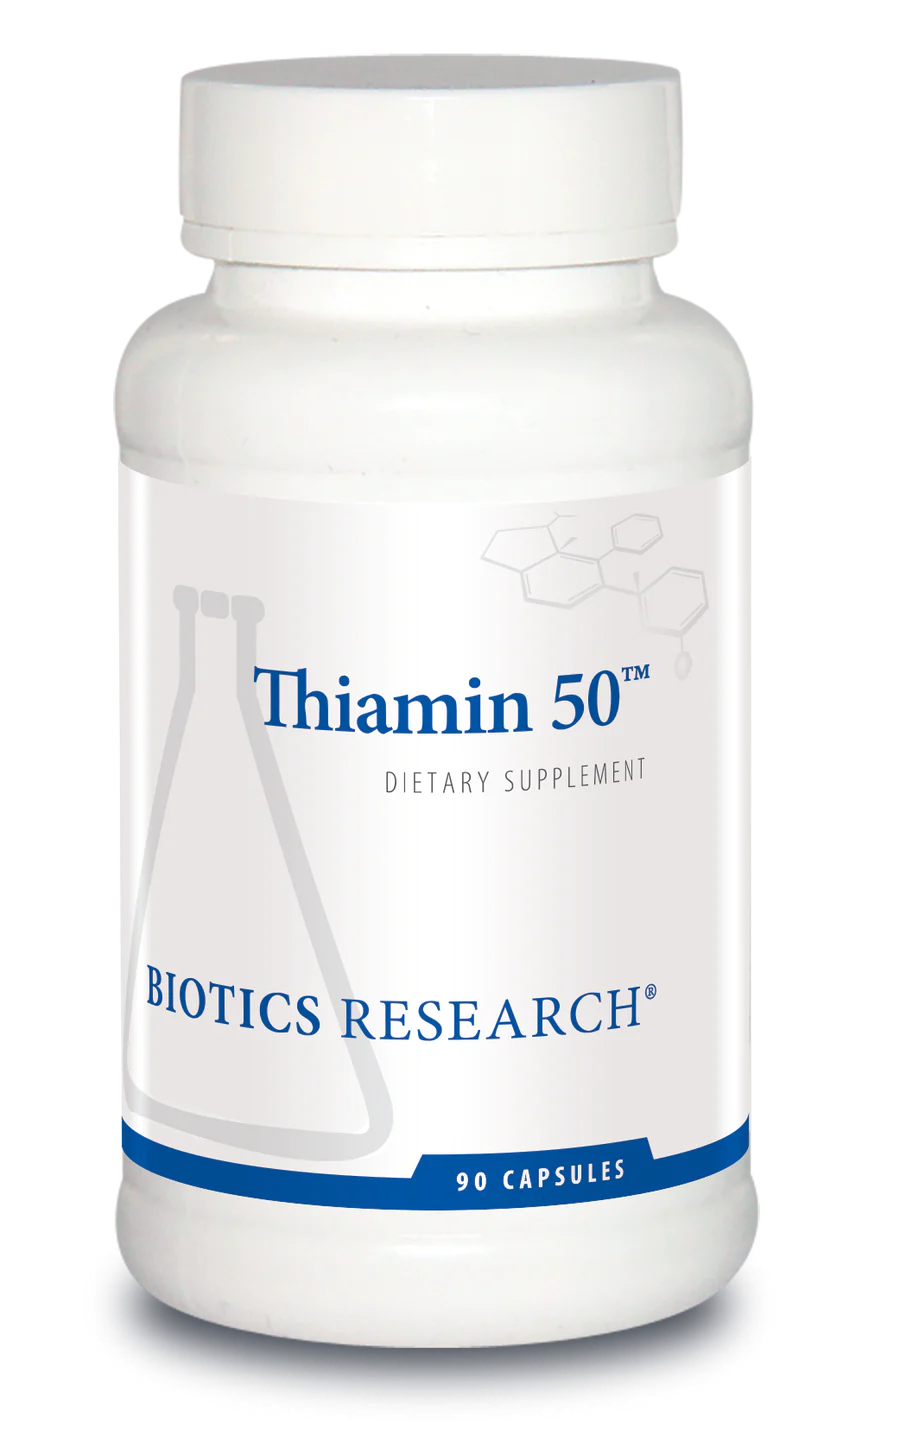 Thiamin 50™